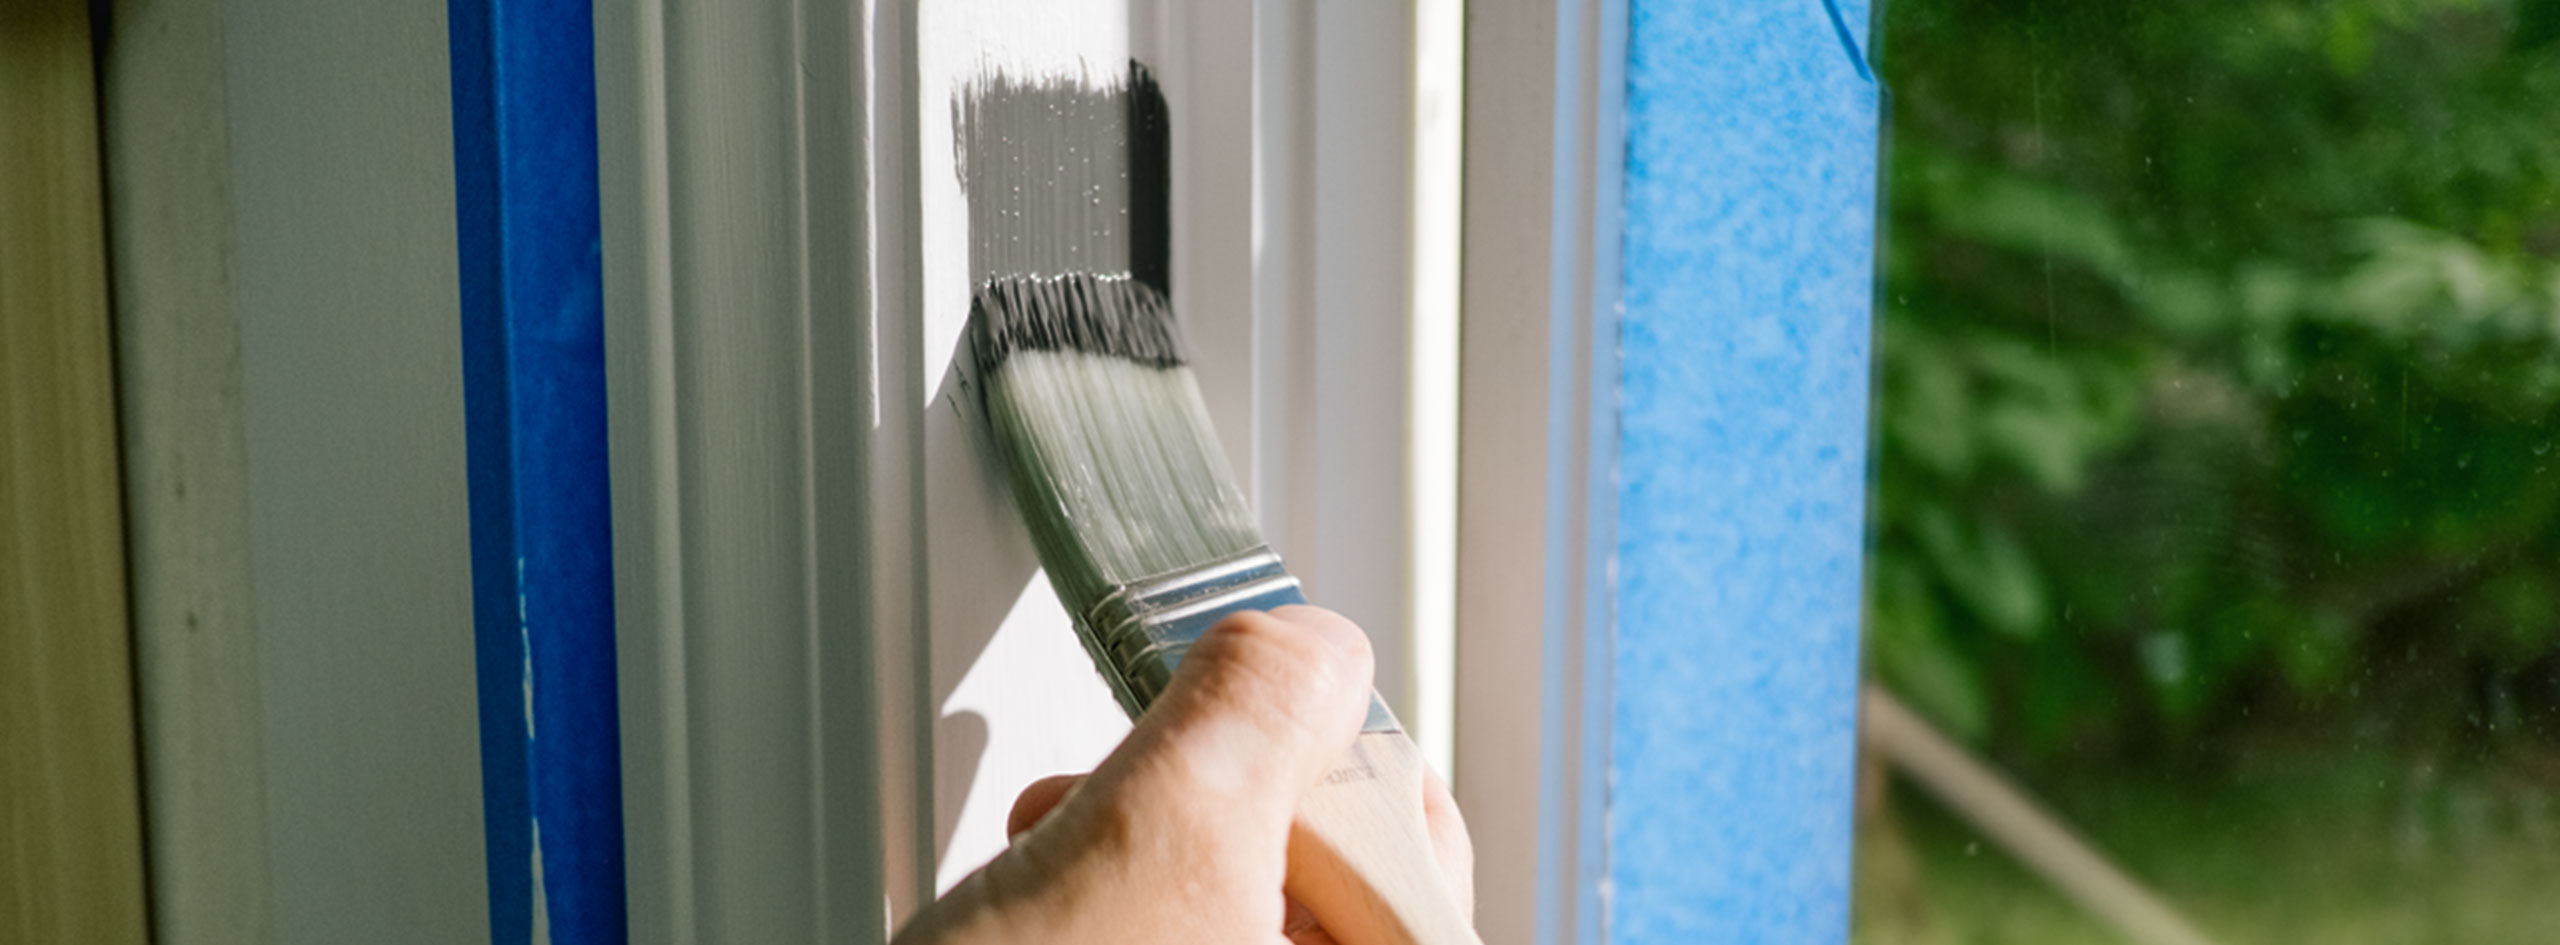 Un propriétaire peint une moulure de fenêtre blanche avec de la peinture grise.